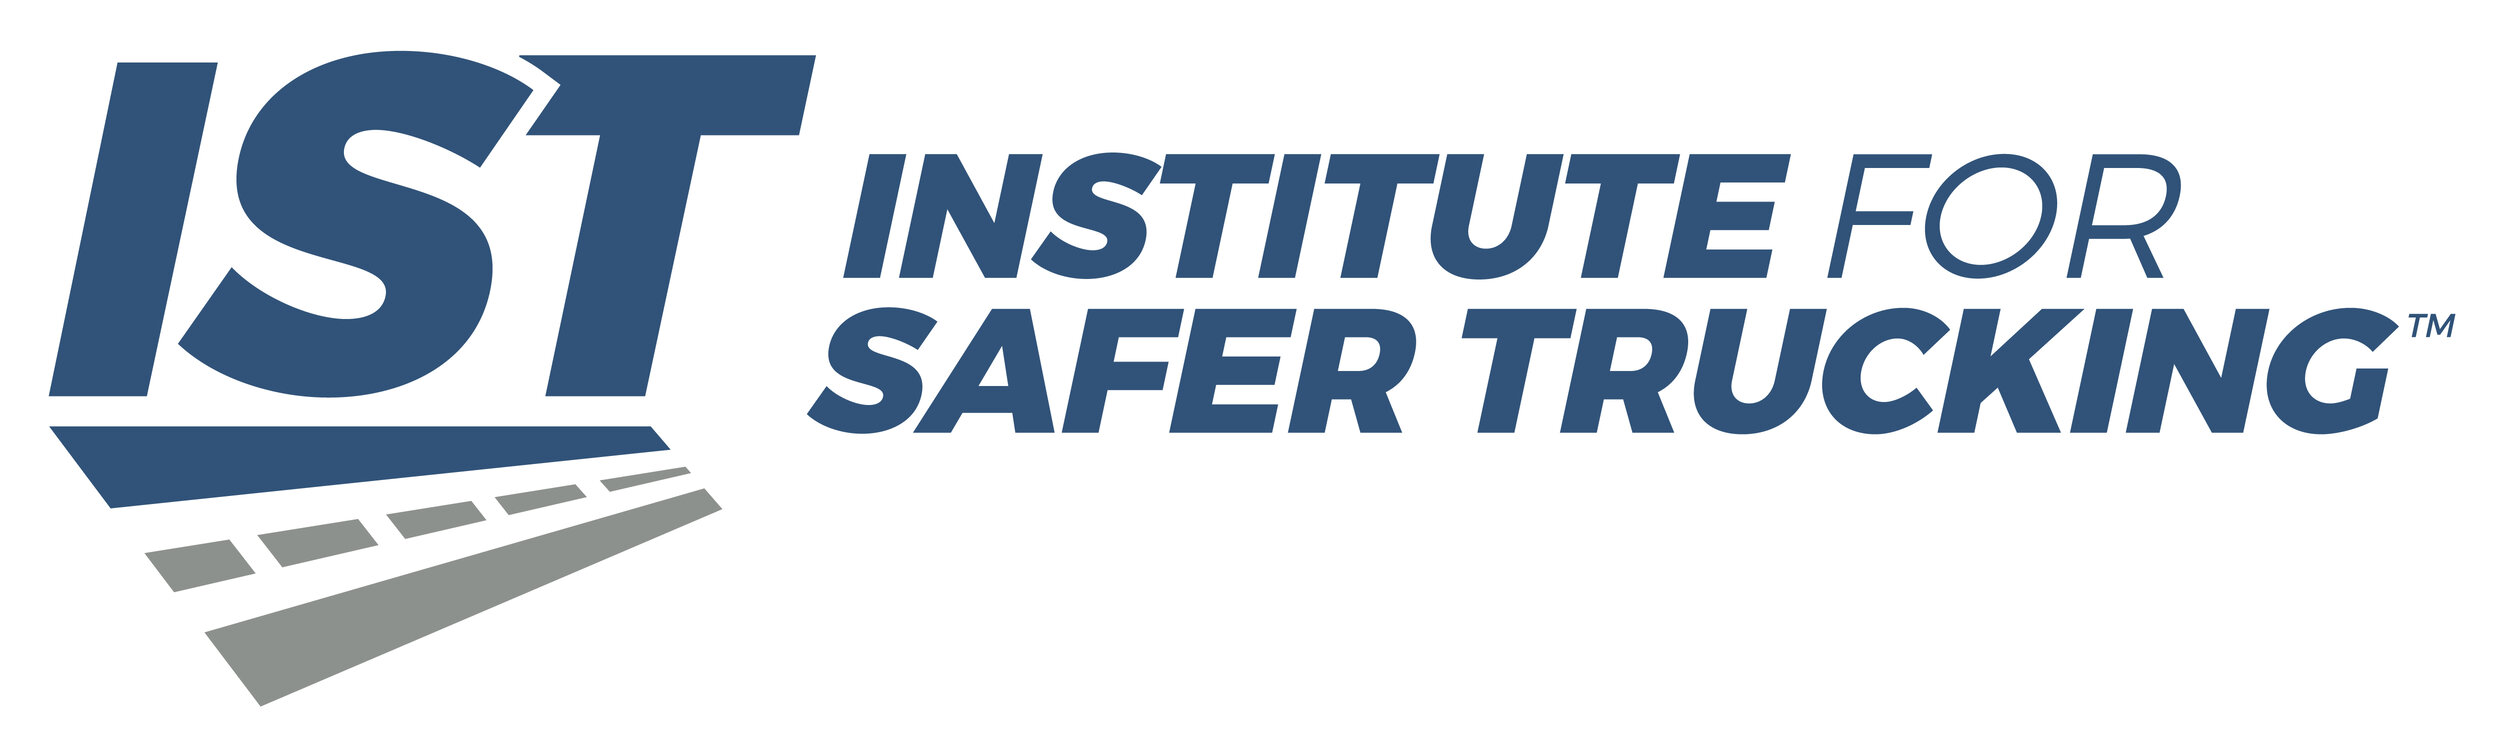 Institute Safer Trucking Logo